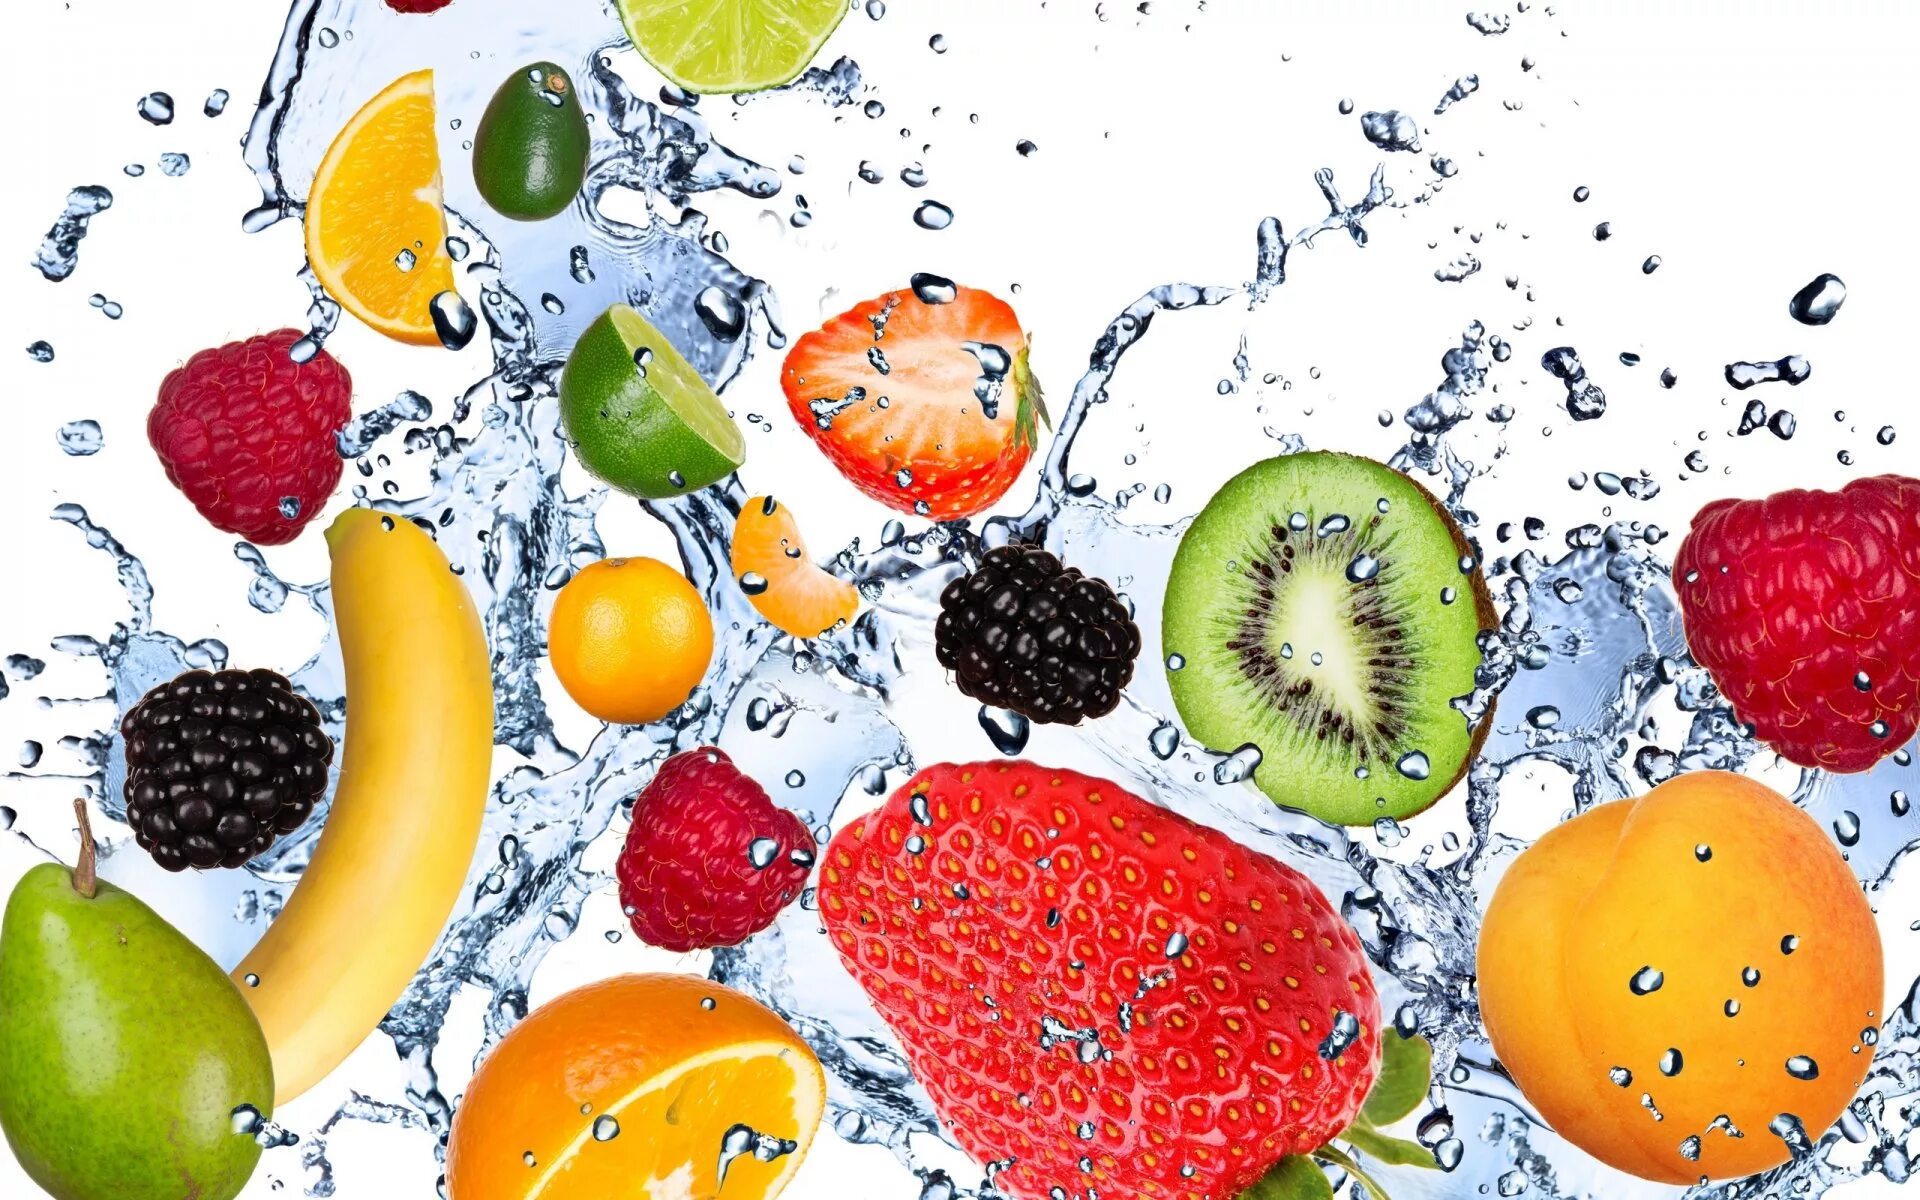 Огэ свежие фрукты. Фрукты в воде. Сочные фрукты. Фрукты фон. Сочные овощи и фрукты.